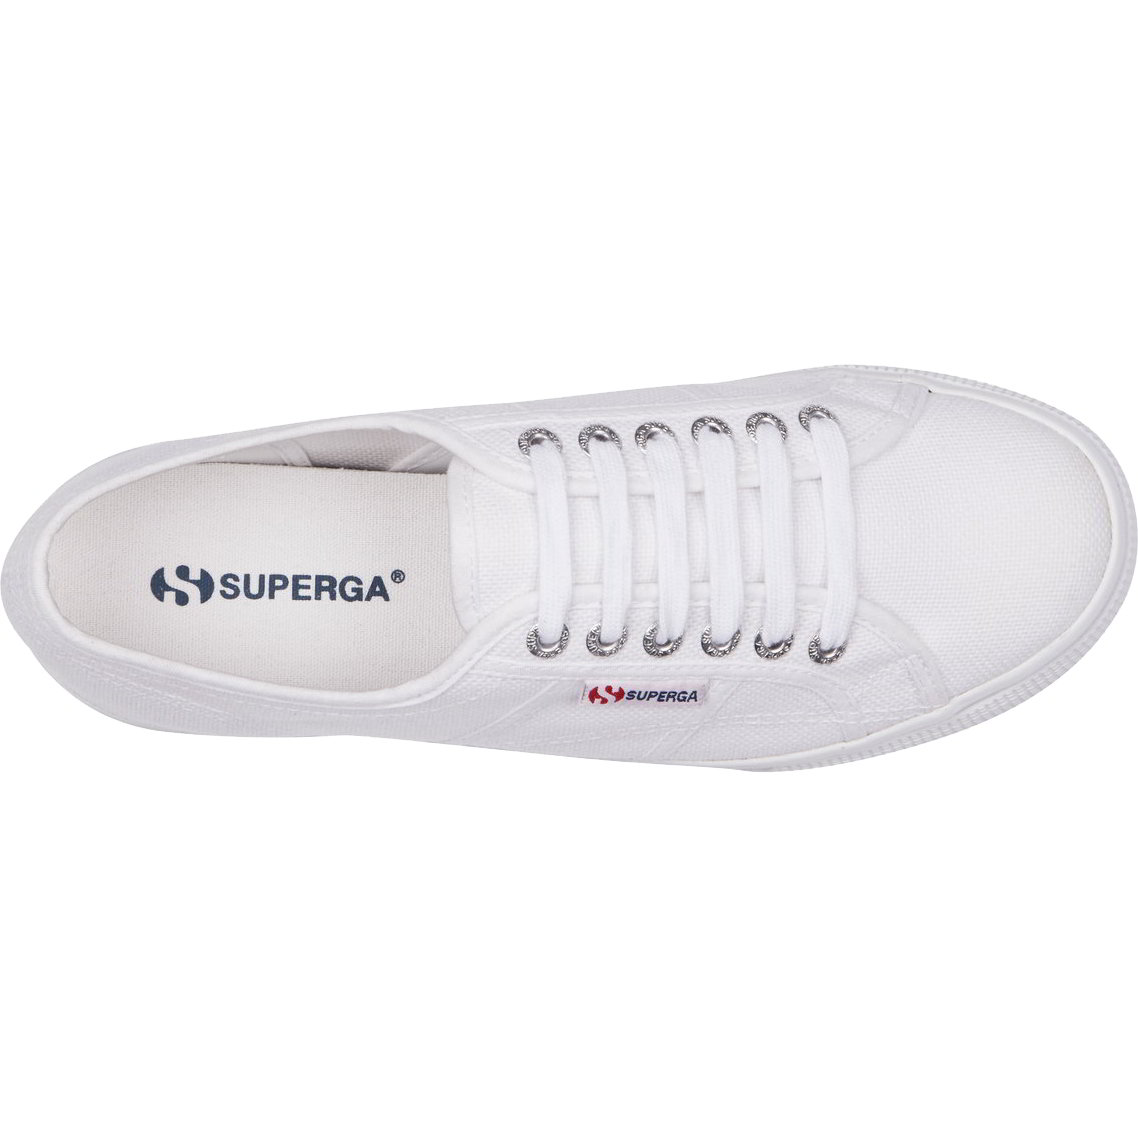 Superga Womens 2790 Linea Chunky Platform Trainers Shoes - UK 7